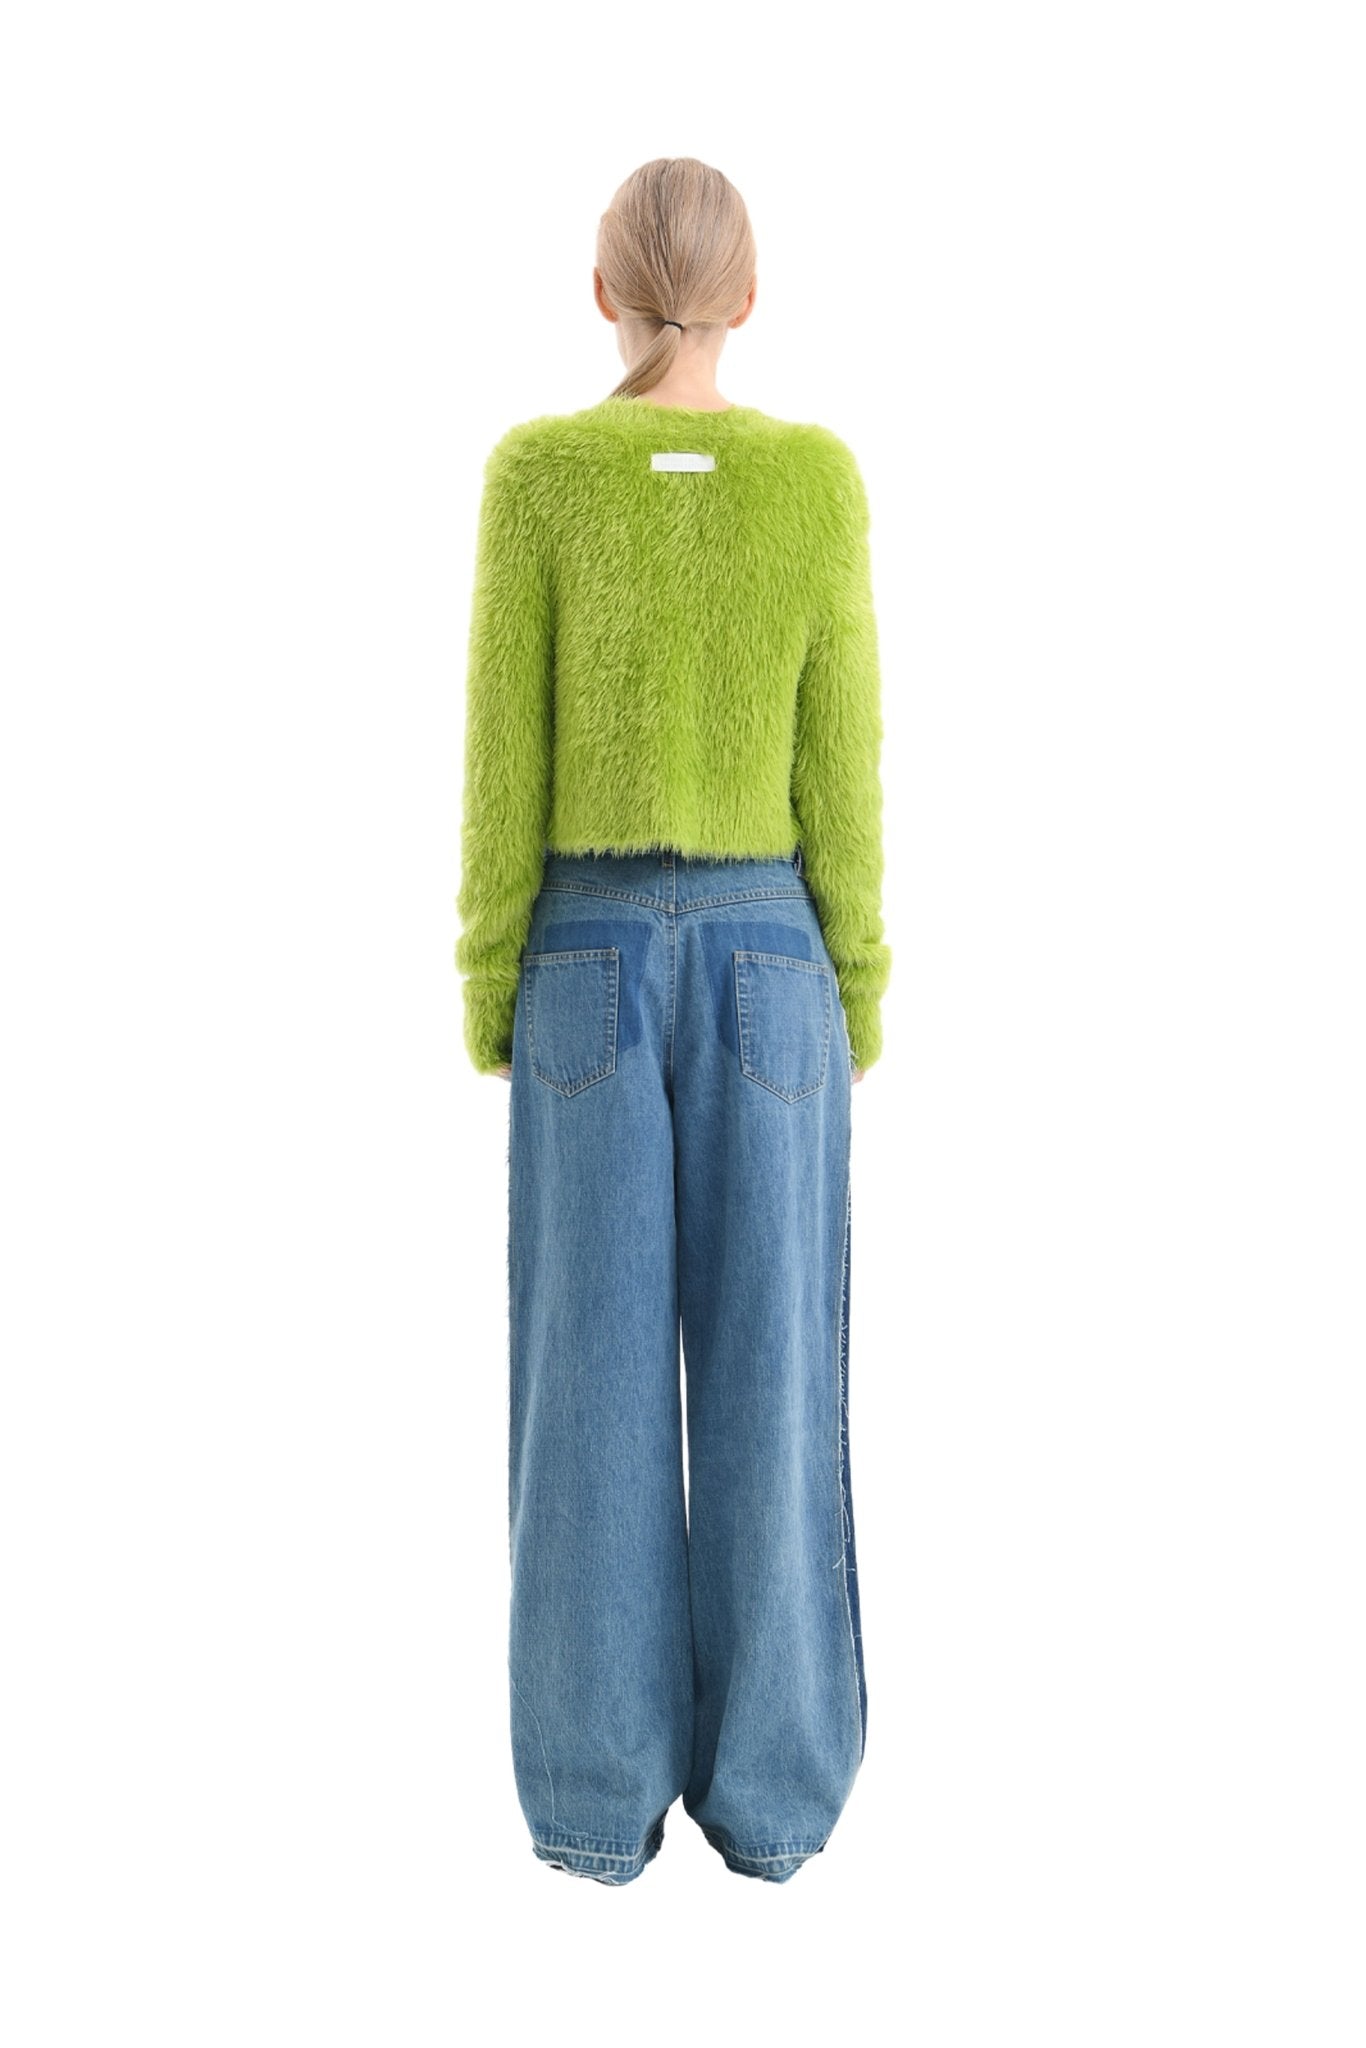 ANN ANDELMAN Green Feather Yarn Sweater | MADA IN CHINA